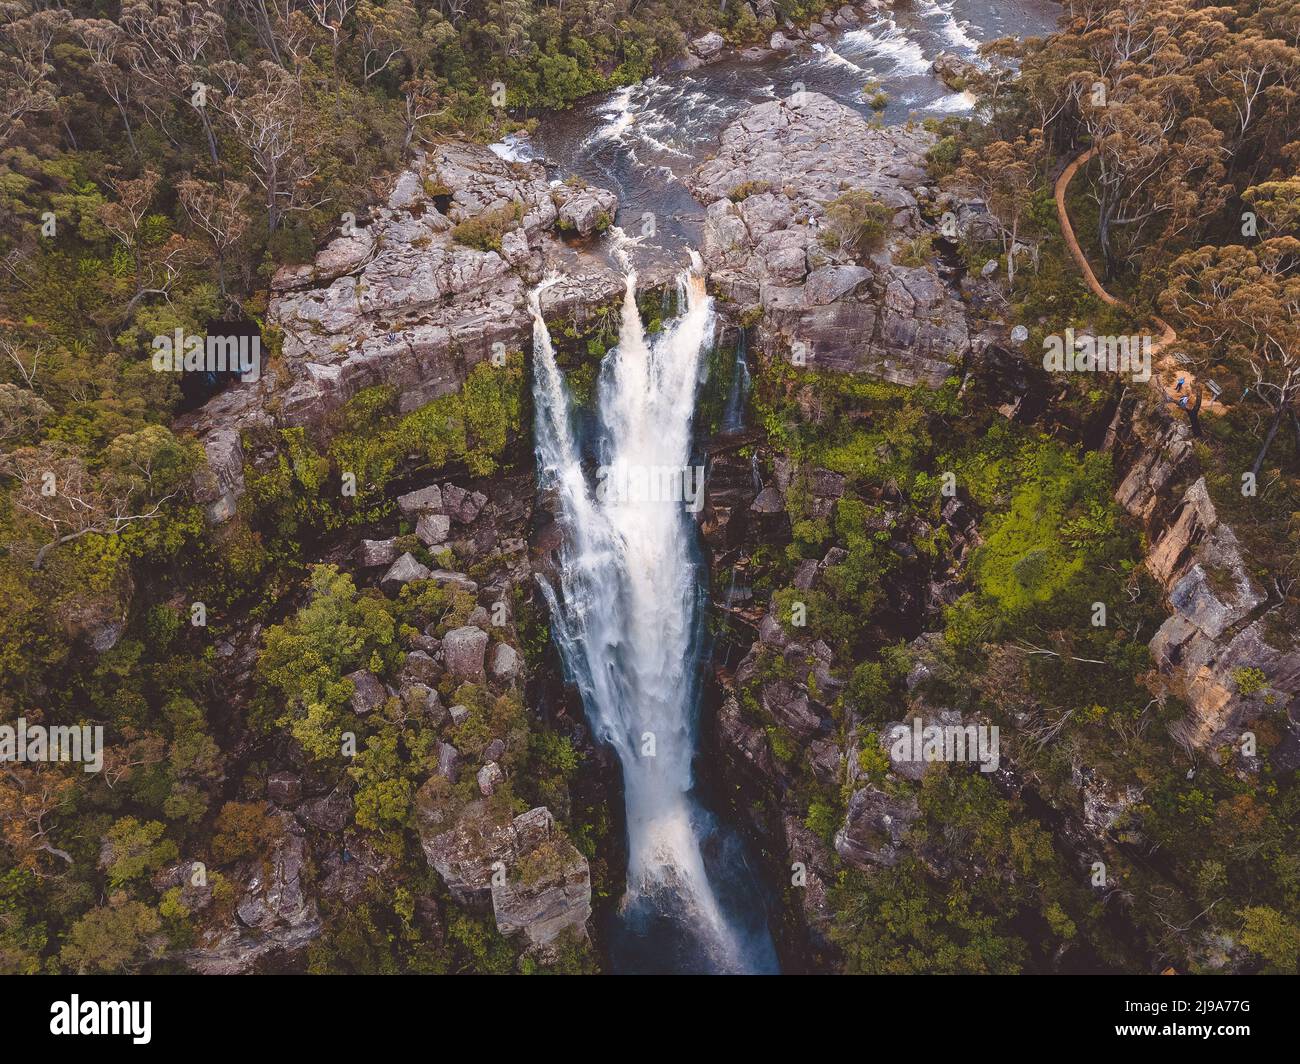 Carrington Falls, située dans les Highlands du sud de la Nouvelle-Galles du Sud, en Australie. Banque D'Images